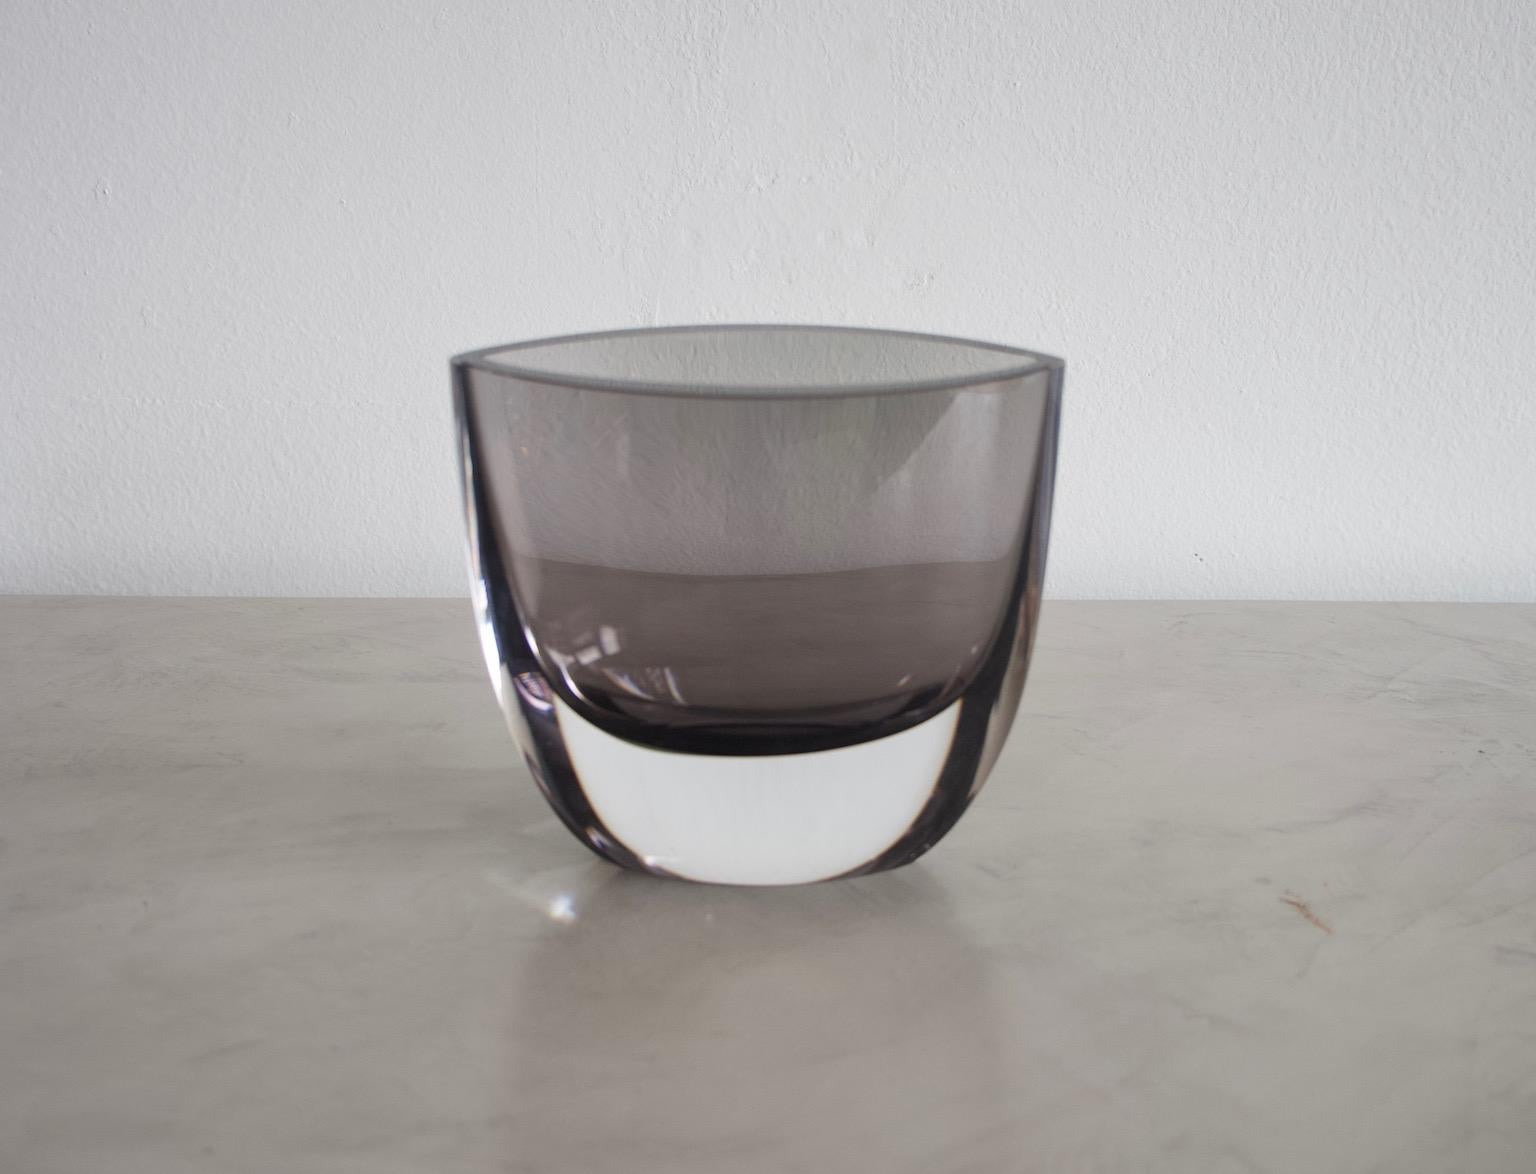 Vase en verre fumé avec recouvrement incolore et section en forme d'amande, conçu par Christian von Sydow. Fabriqué par Kosta Boda, Suède. 
Gravé sur le fond : Kosta Boda H8873 A.I.C. C. v. Sydow.